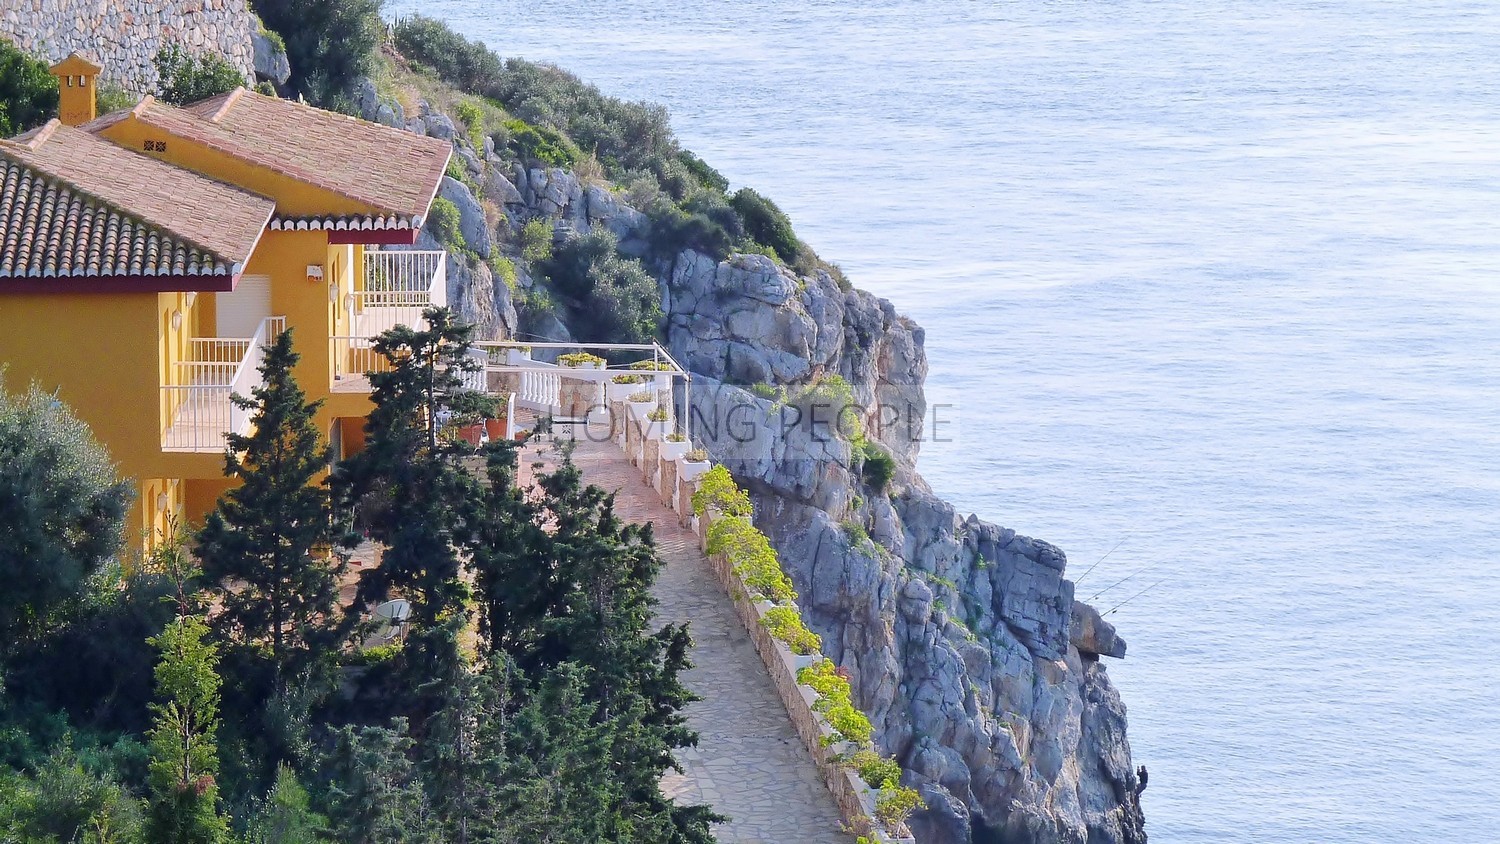 [DÉJÀ LOUÉ]: Villa sur falaise surplombant la baie... avec distance à pied de plage et centre ville. Calme assuré.